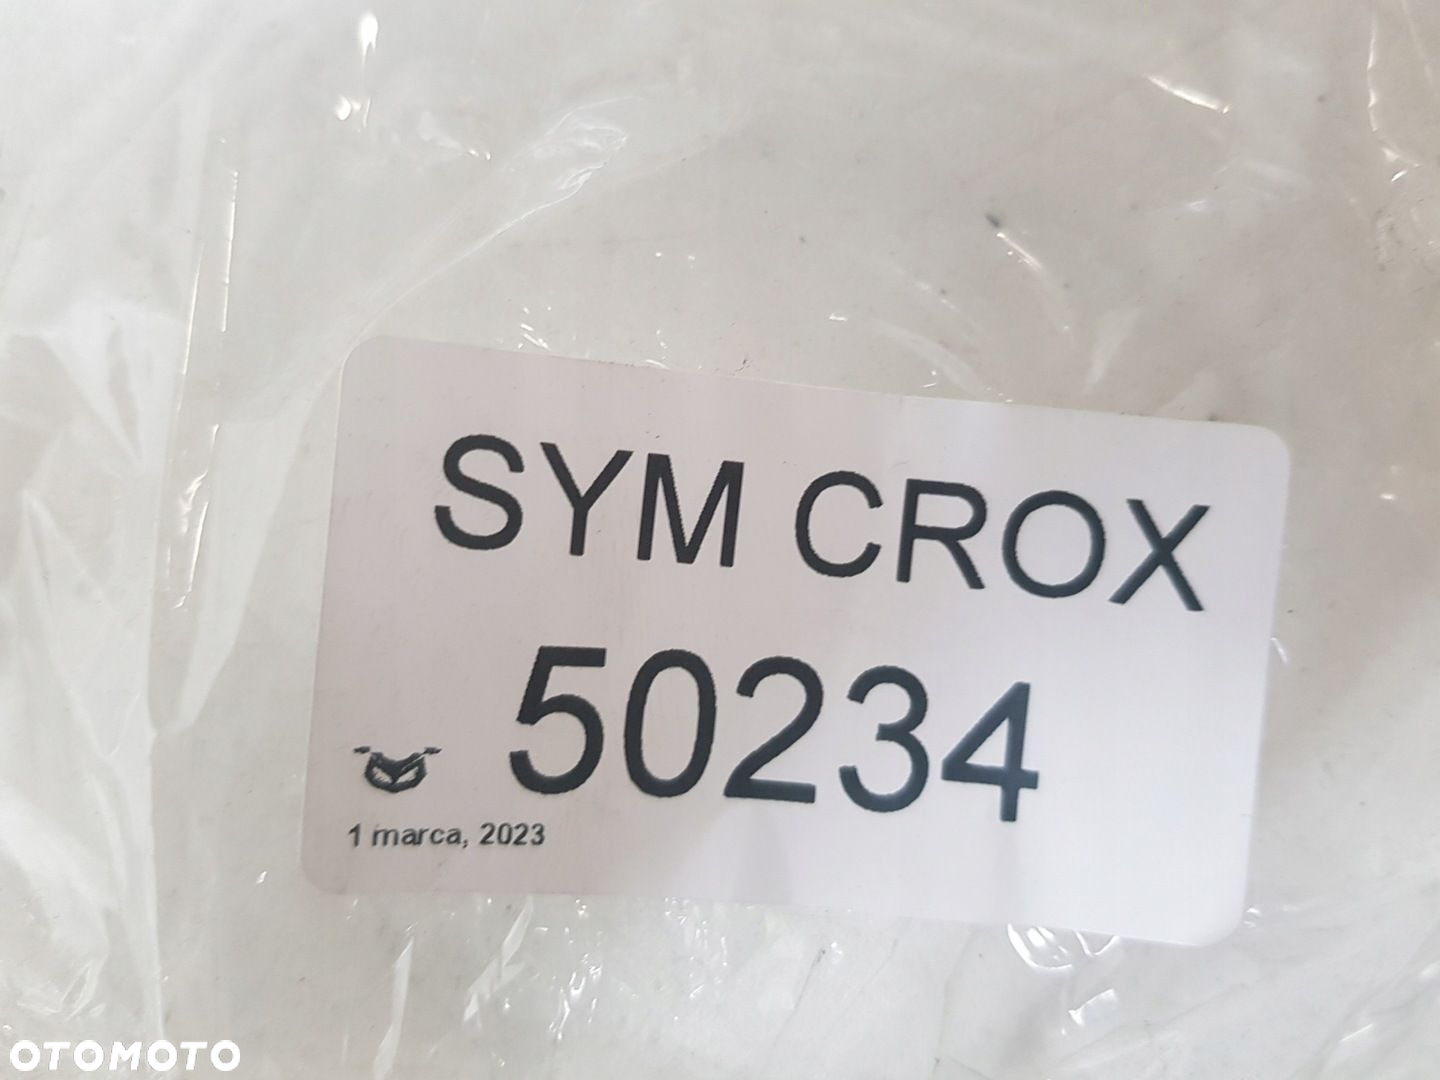 SYM CROX 50 LICZNIK ZEGARY - 11